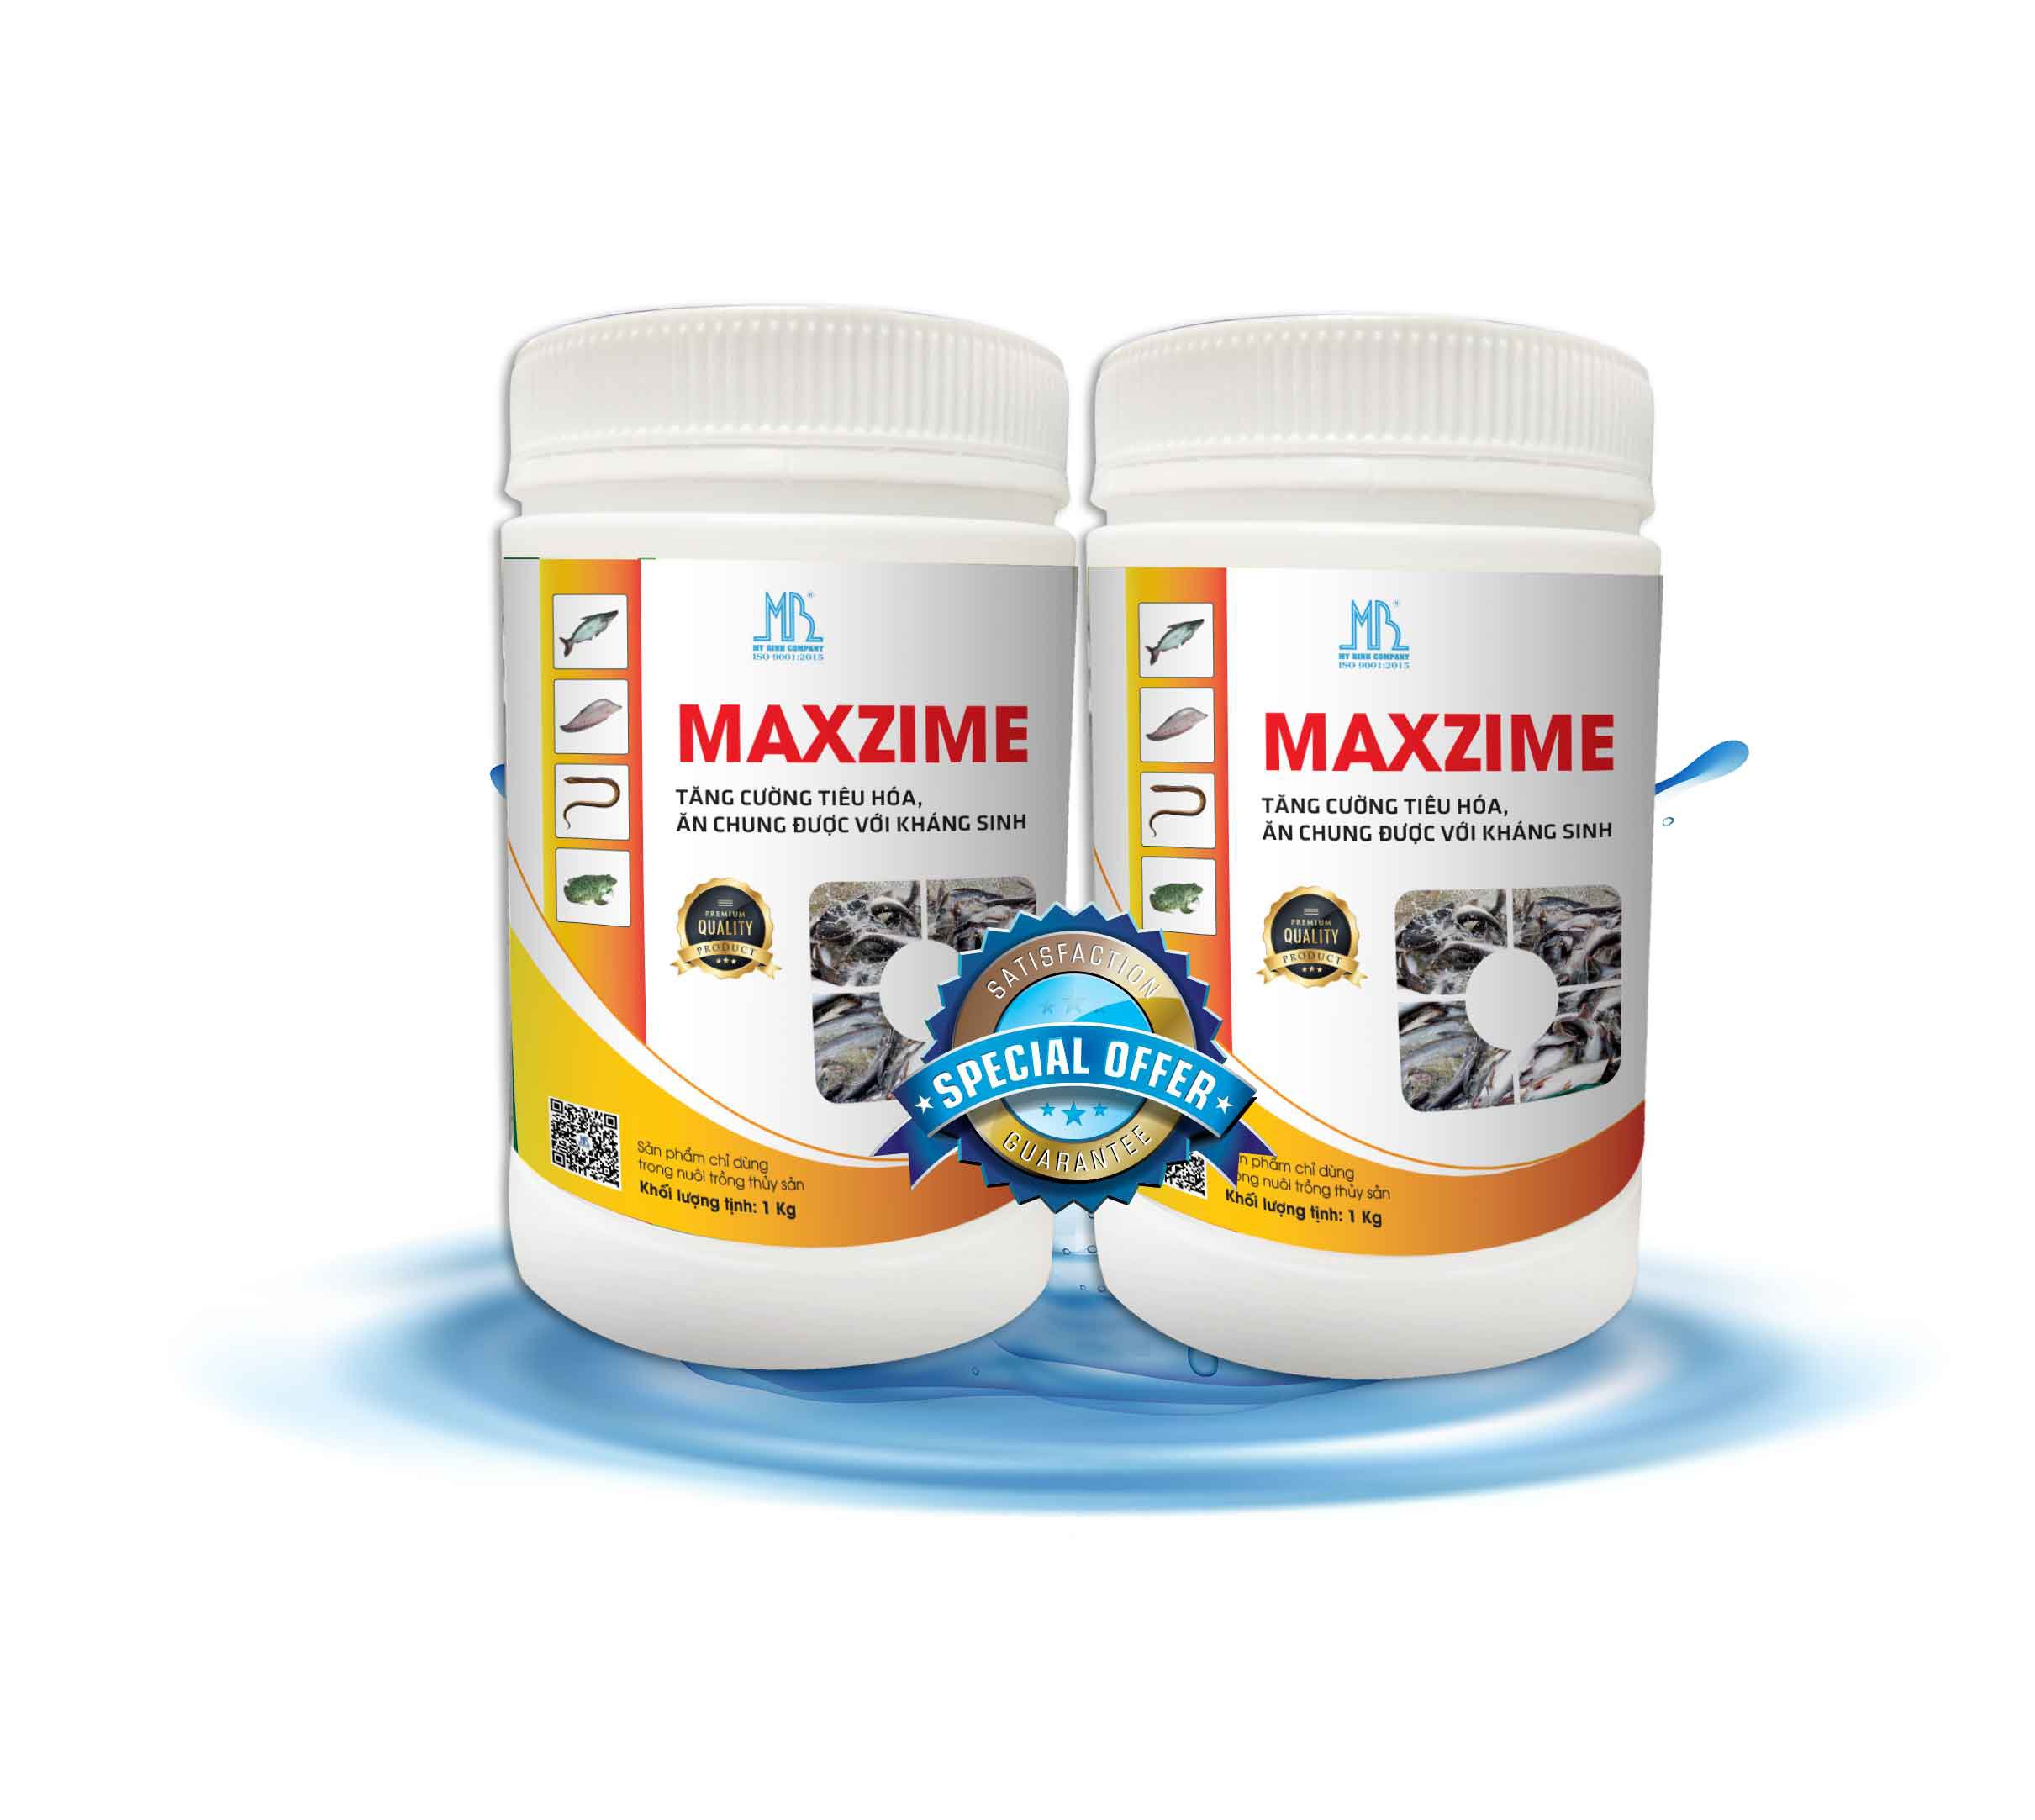 MAXZIME - Enzyme đậm đặc cho cá dùng chung với kháng sinh